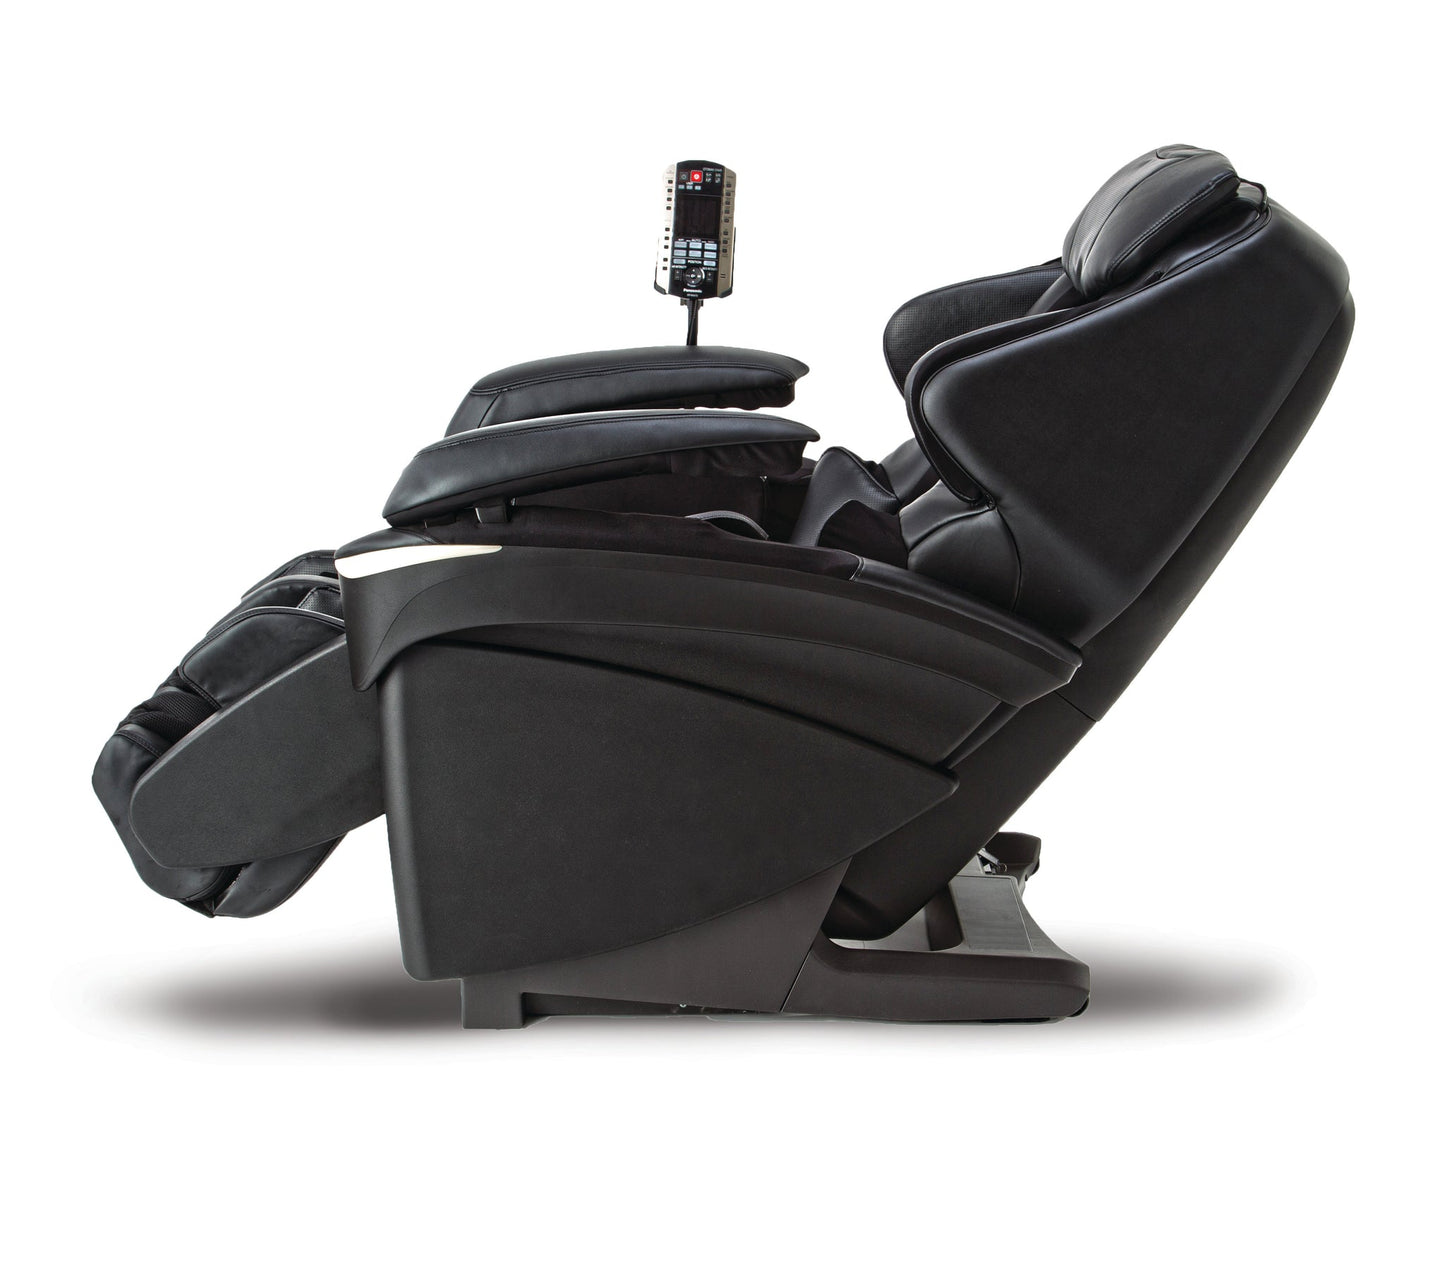 MA73 Panasonic Massage Chair